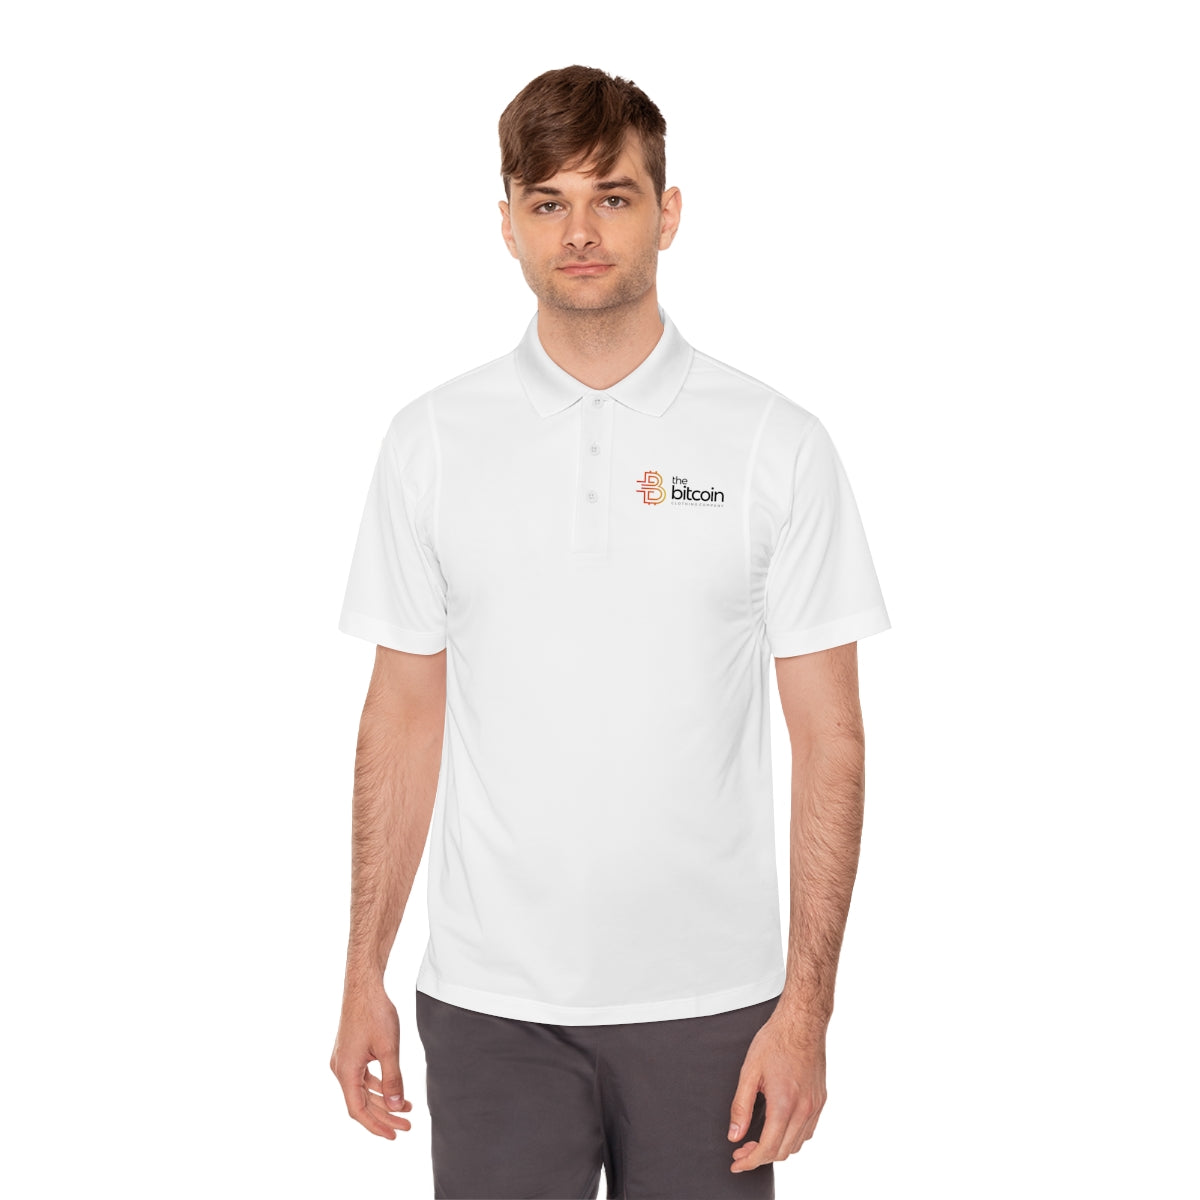 The Bitcoin Clothing Company Men's Sport Polo Shirt